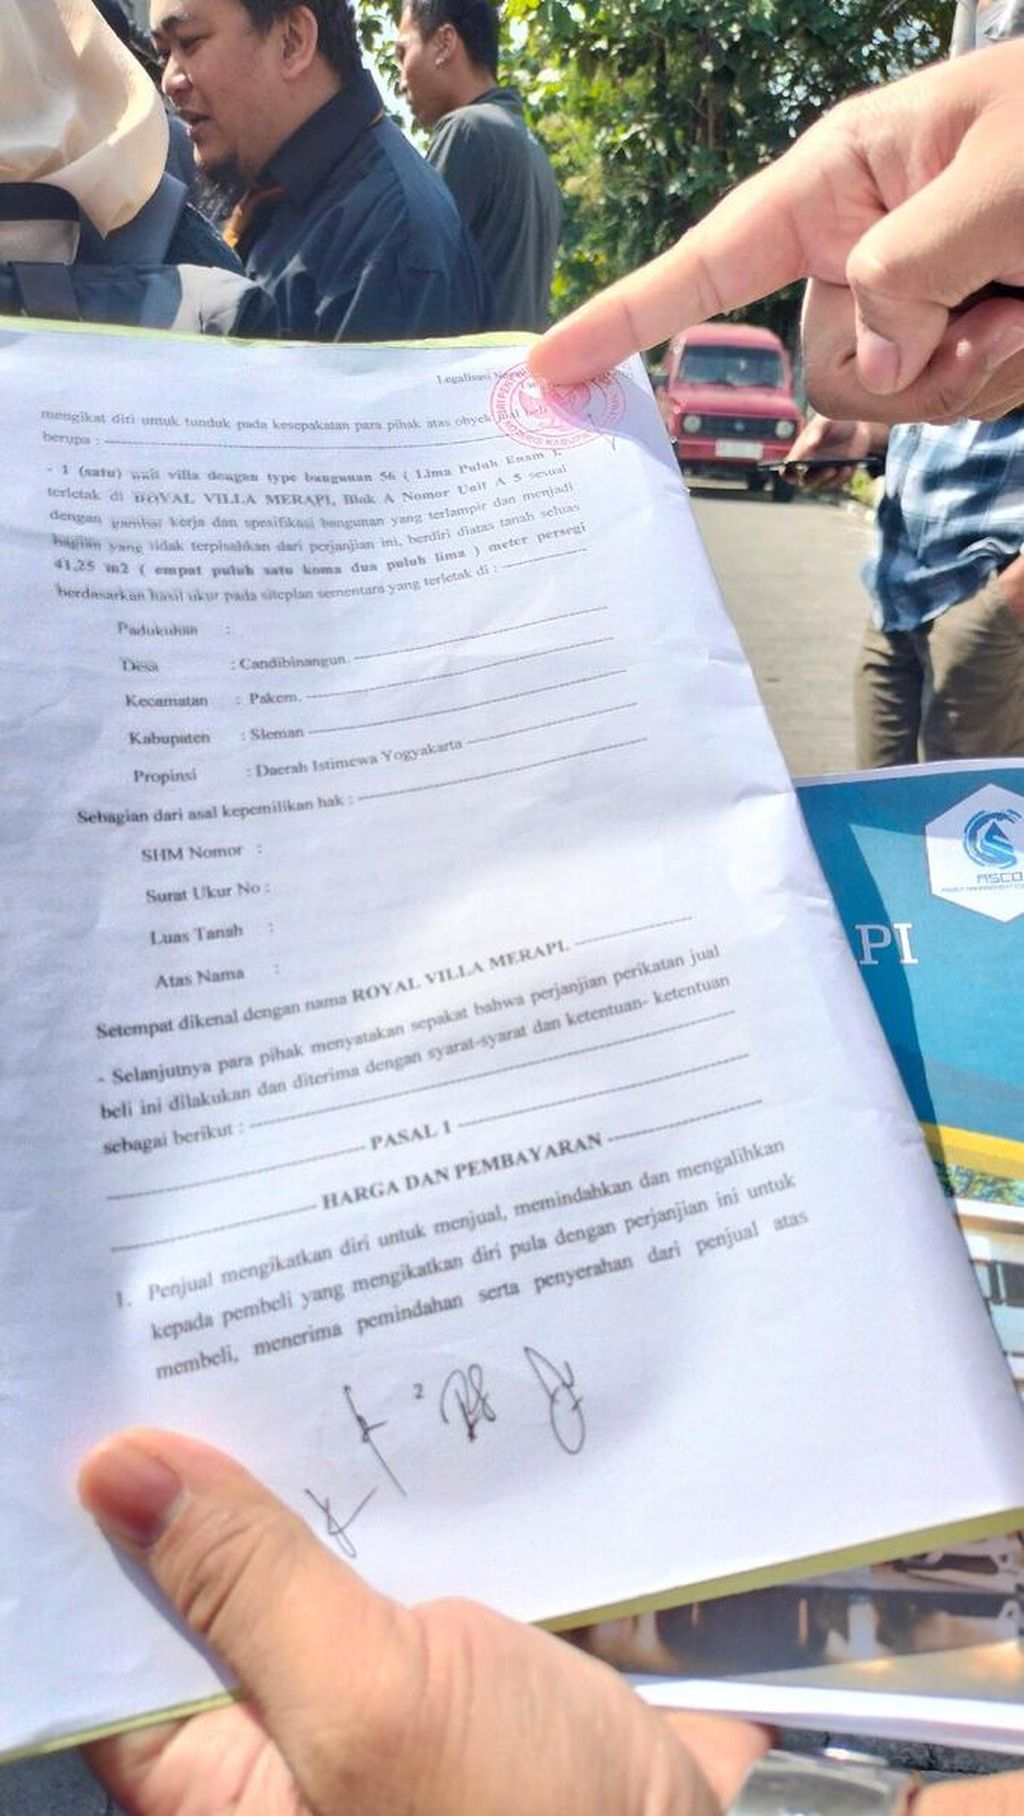 Seorang korban penipuan menunjukkan contoh surat perjanjian dari pihak investor yang menawarkan investasi di atas tanah kas desa. Surat tersebut sudah dilegalisasi dengan stempel dari notaris.